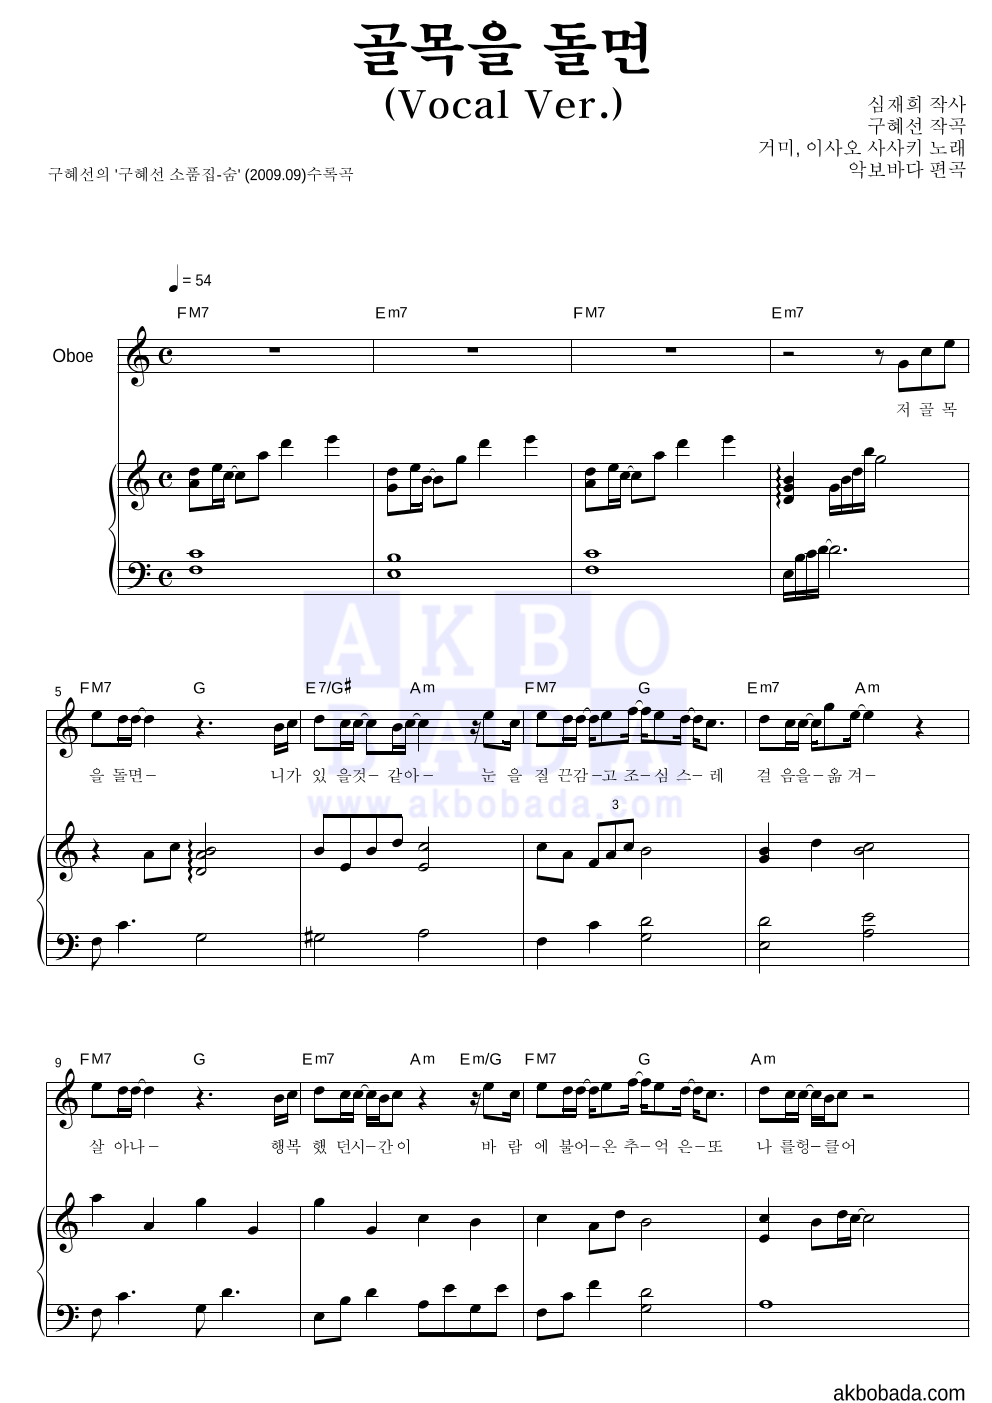 구혜선 - 골목을 돌면 (Vocal Ver.) (악기별) 오보에&피아노 악보 